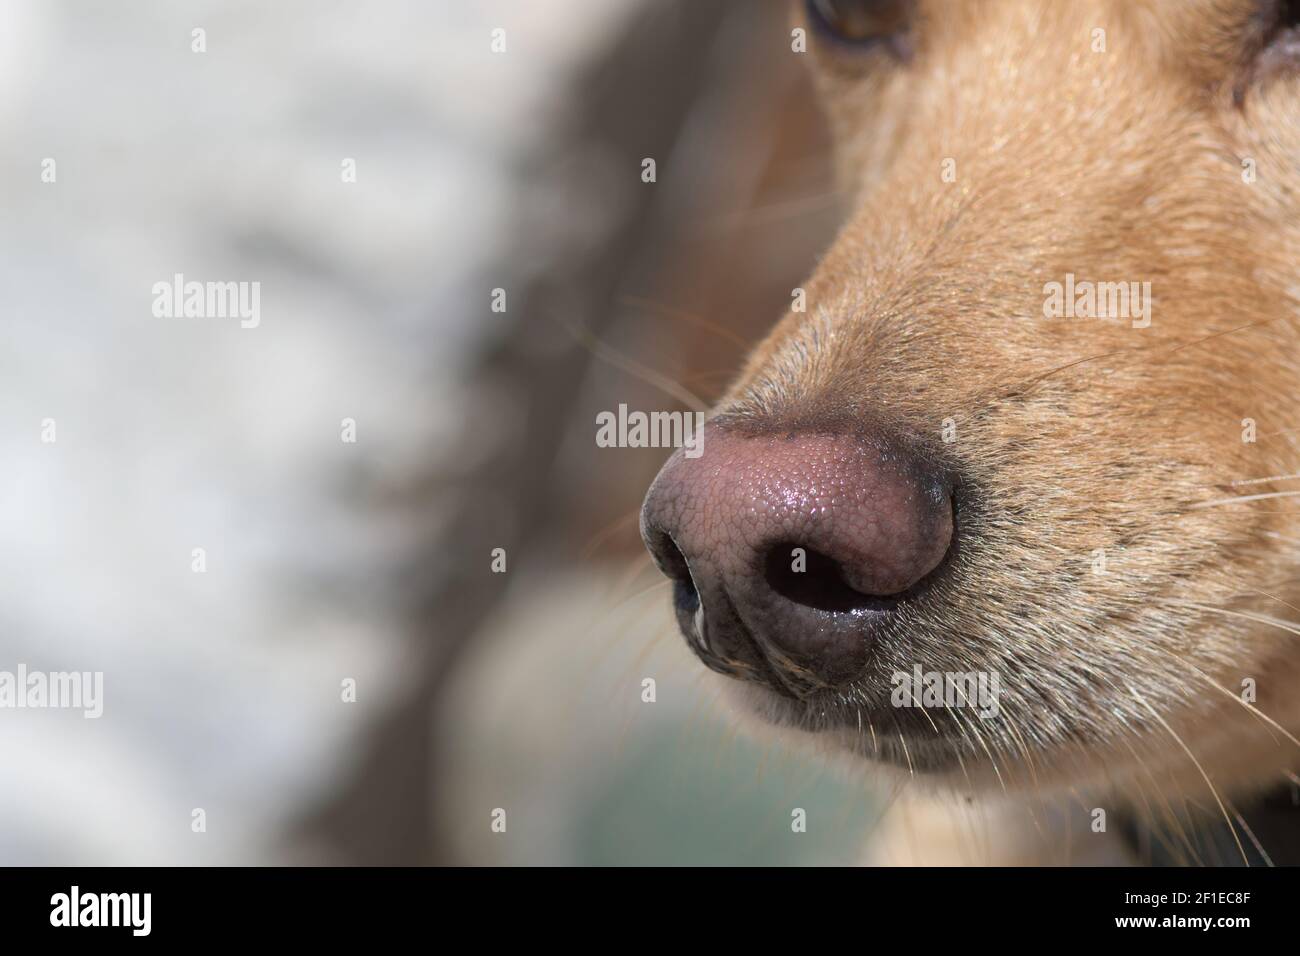 Gros plan sur le nez et le museau du chien brun clair. Dressage de chiens, chien de détection ou chien sniffer, sens et concepts d'odeur. Banque D'Images